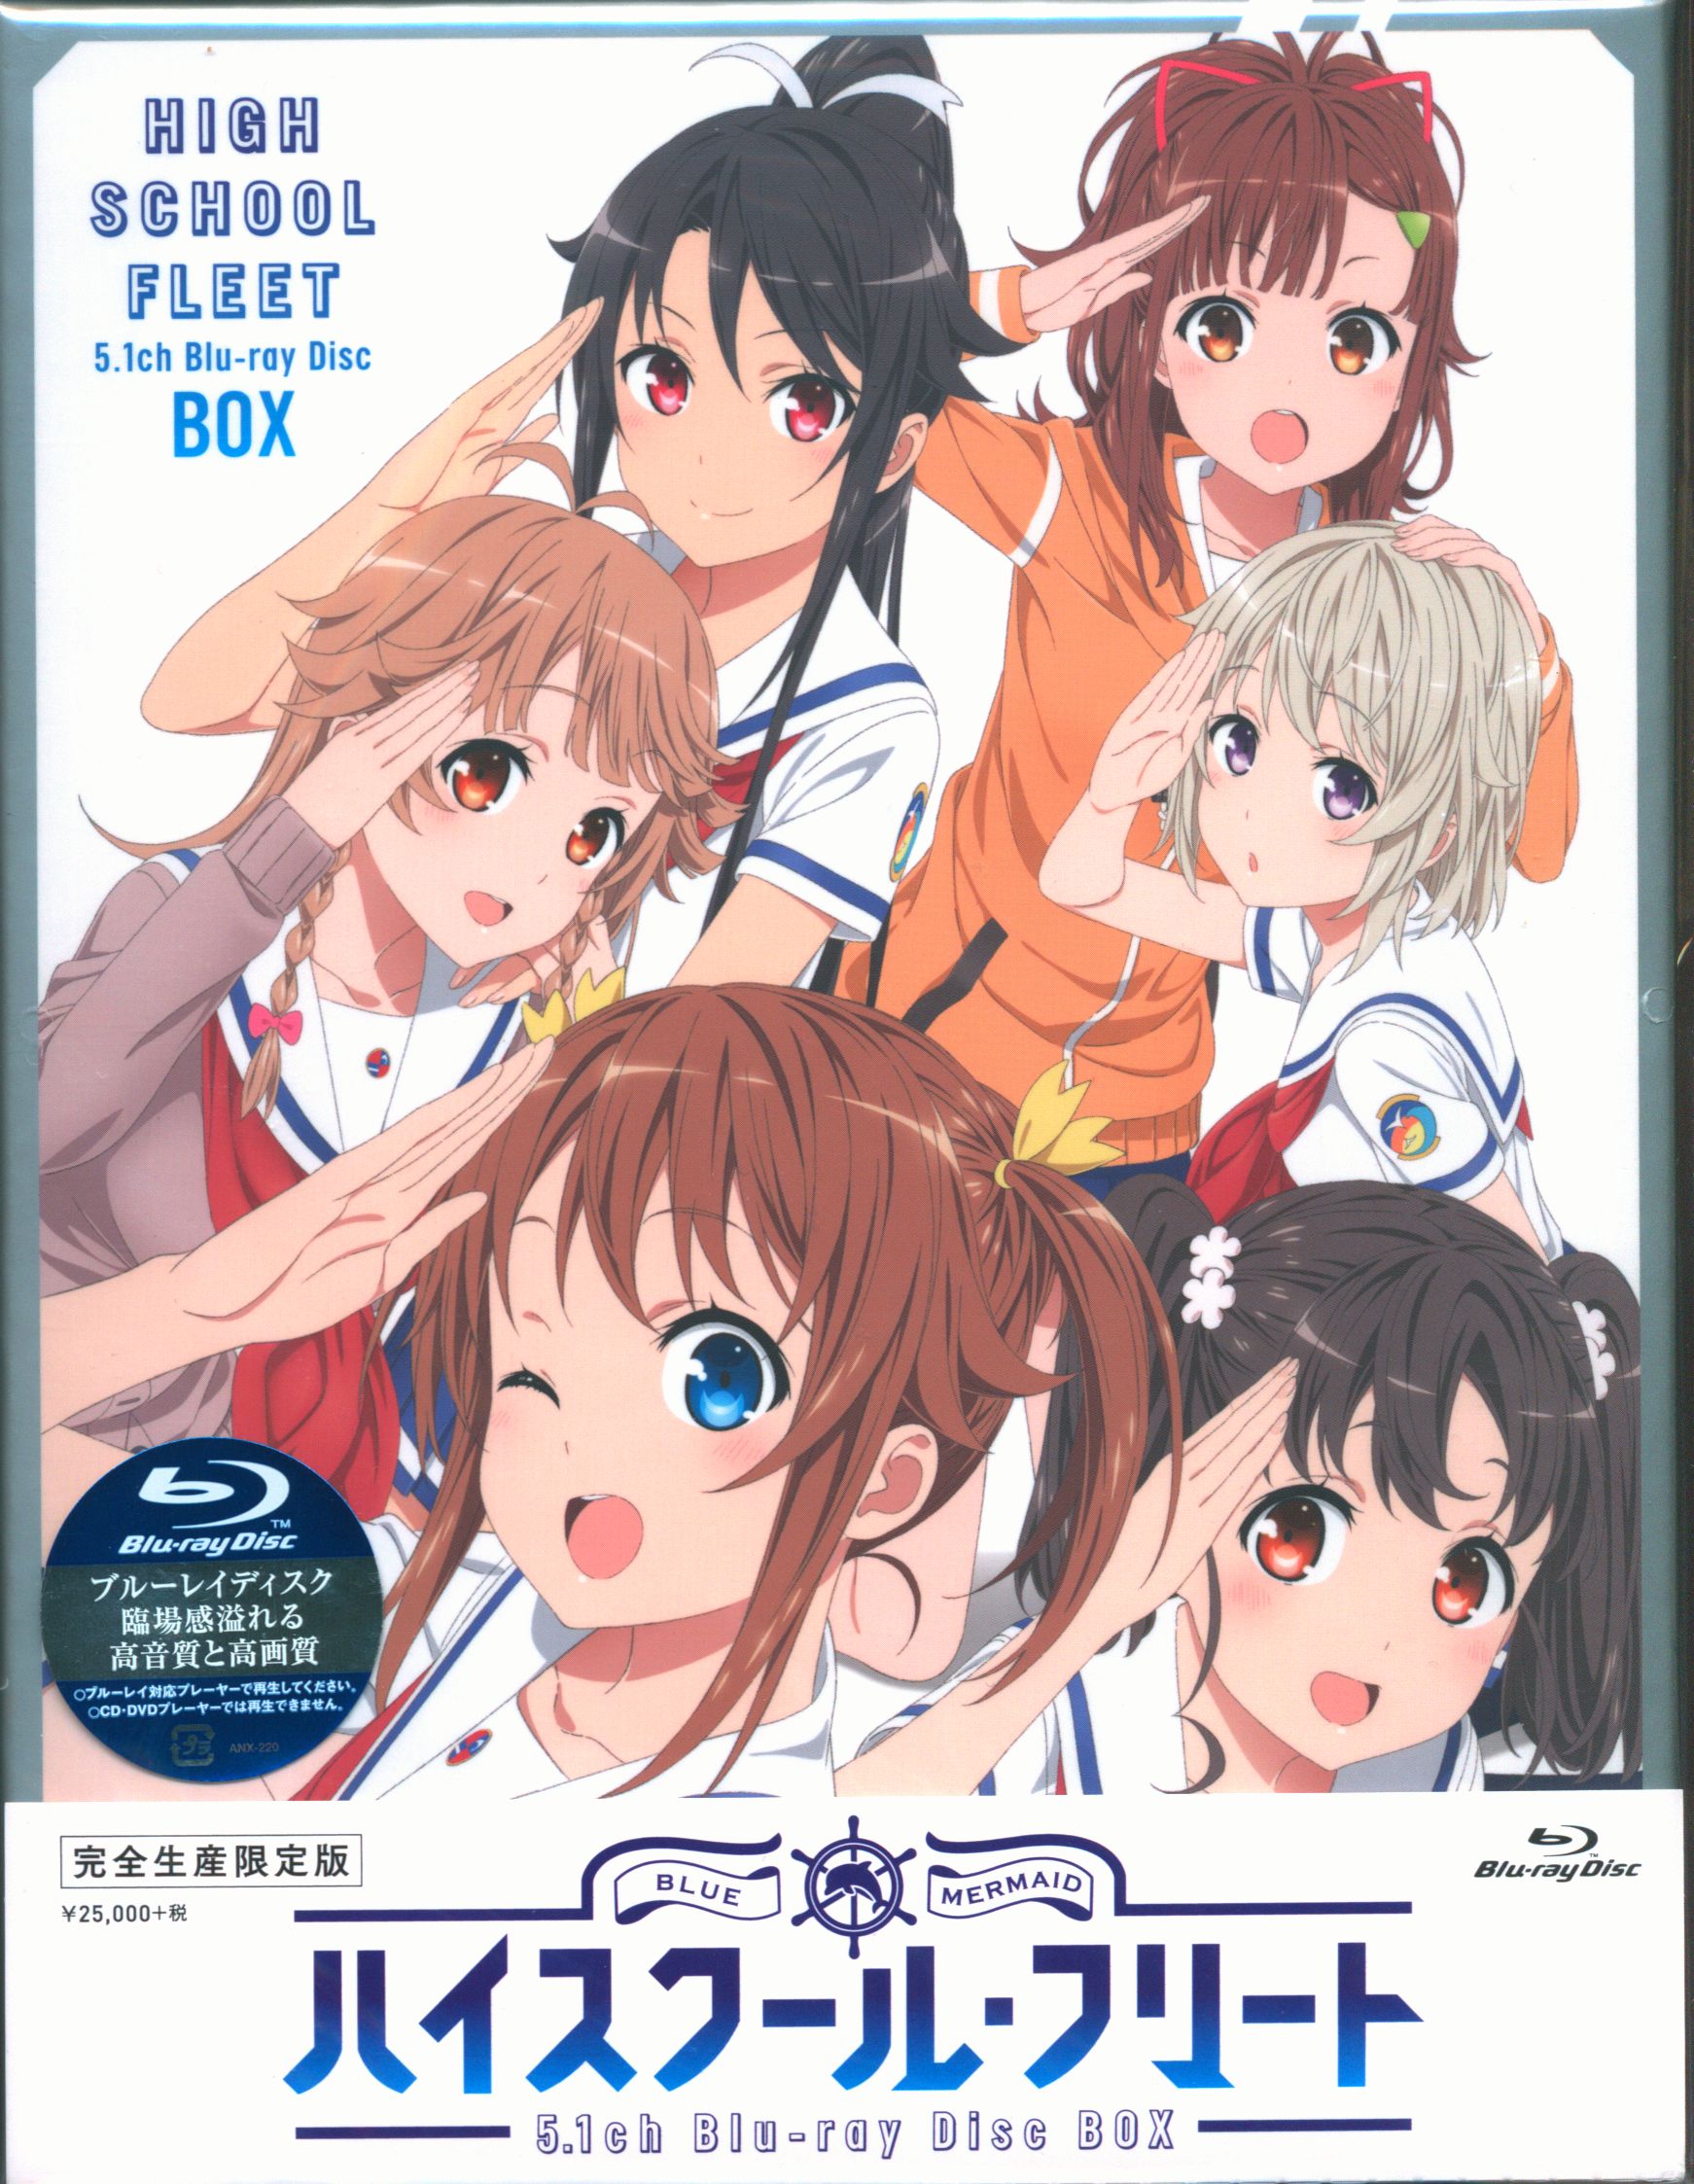 信田ユウハイスクール・フリート 5.1ch Blu-ray Disc BOX - アニメ